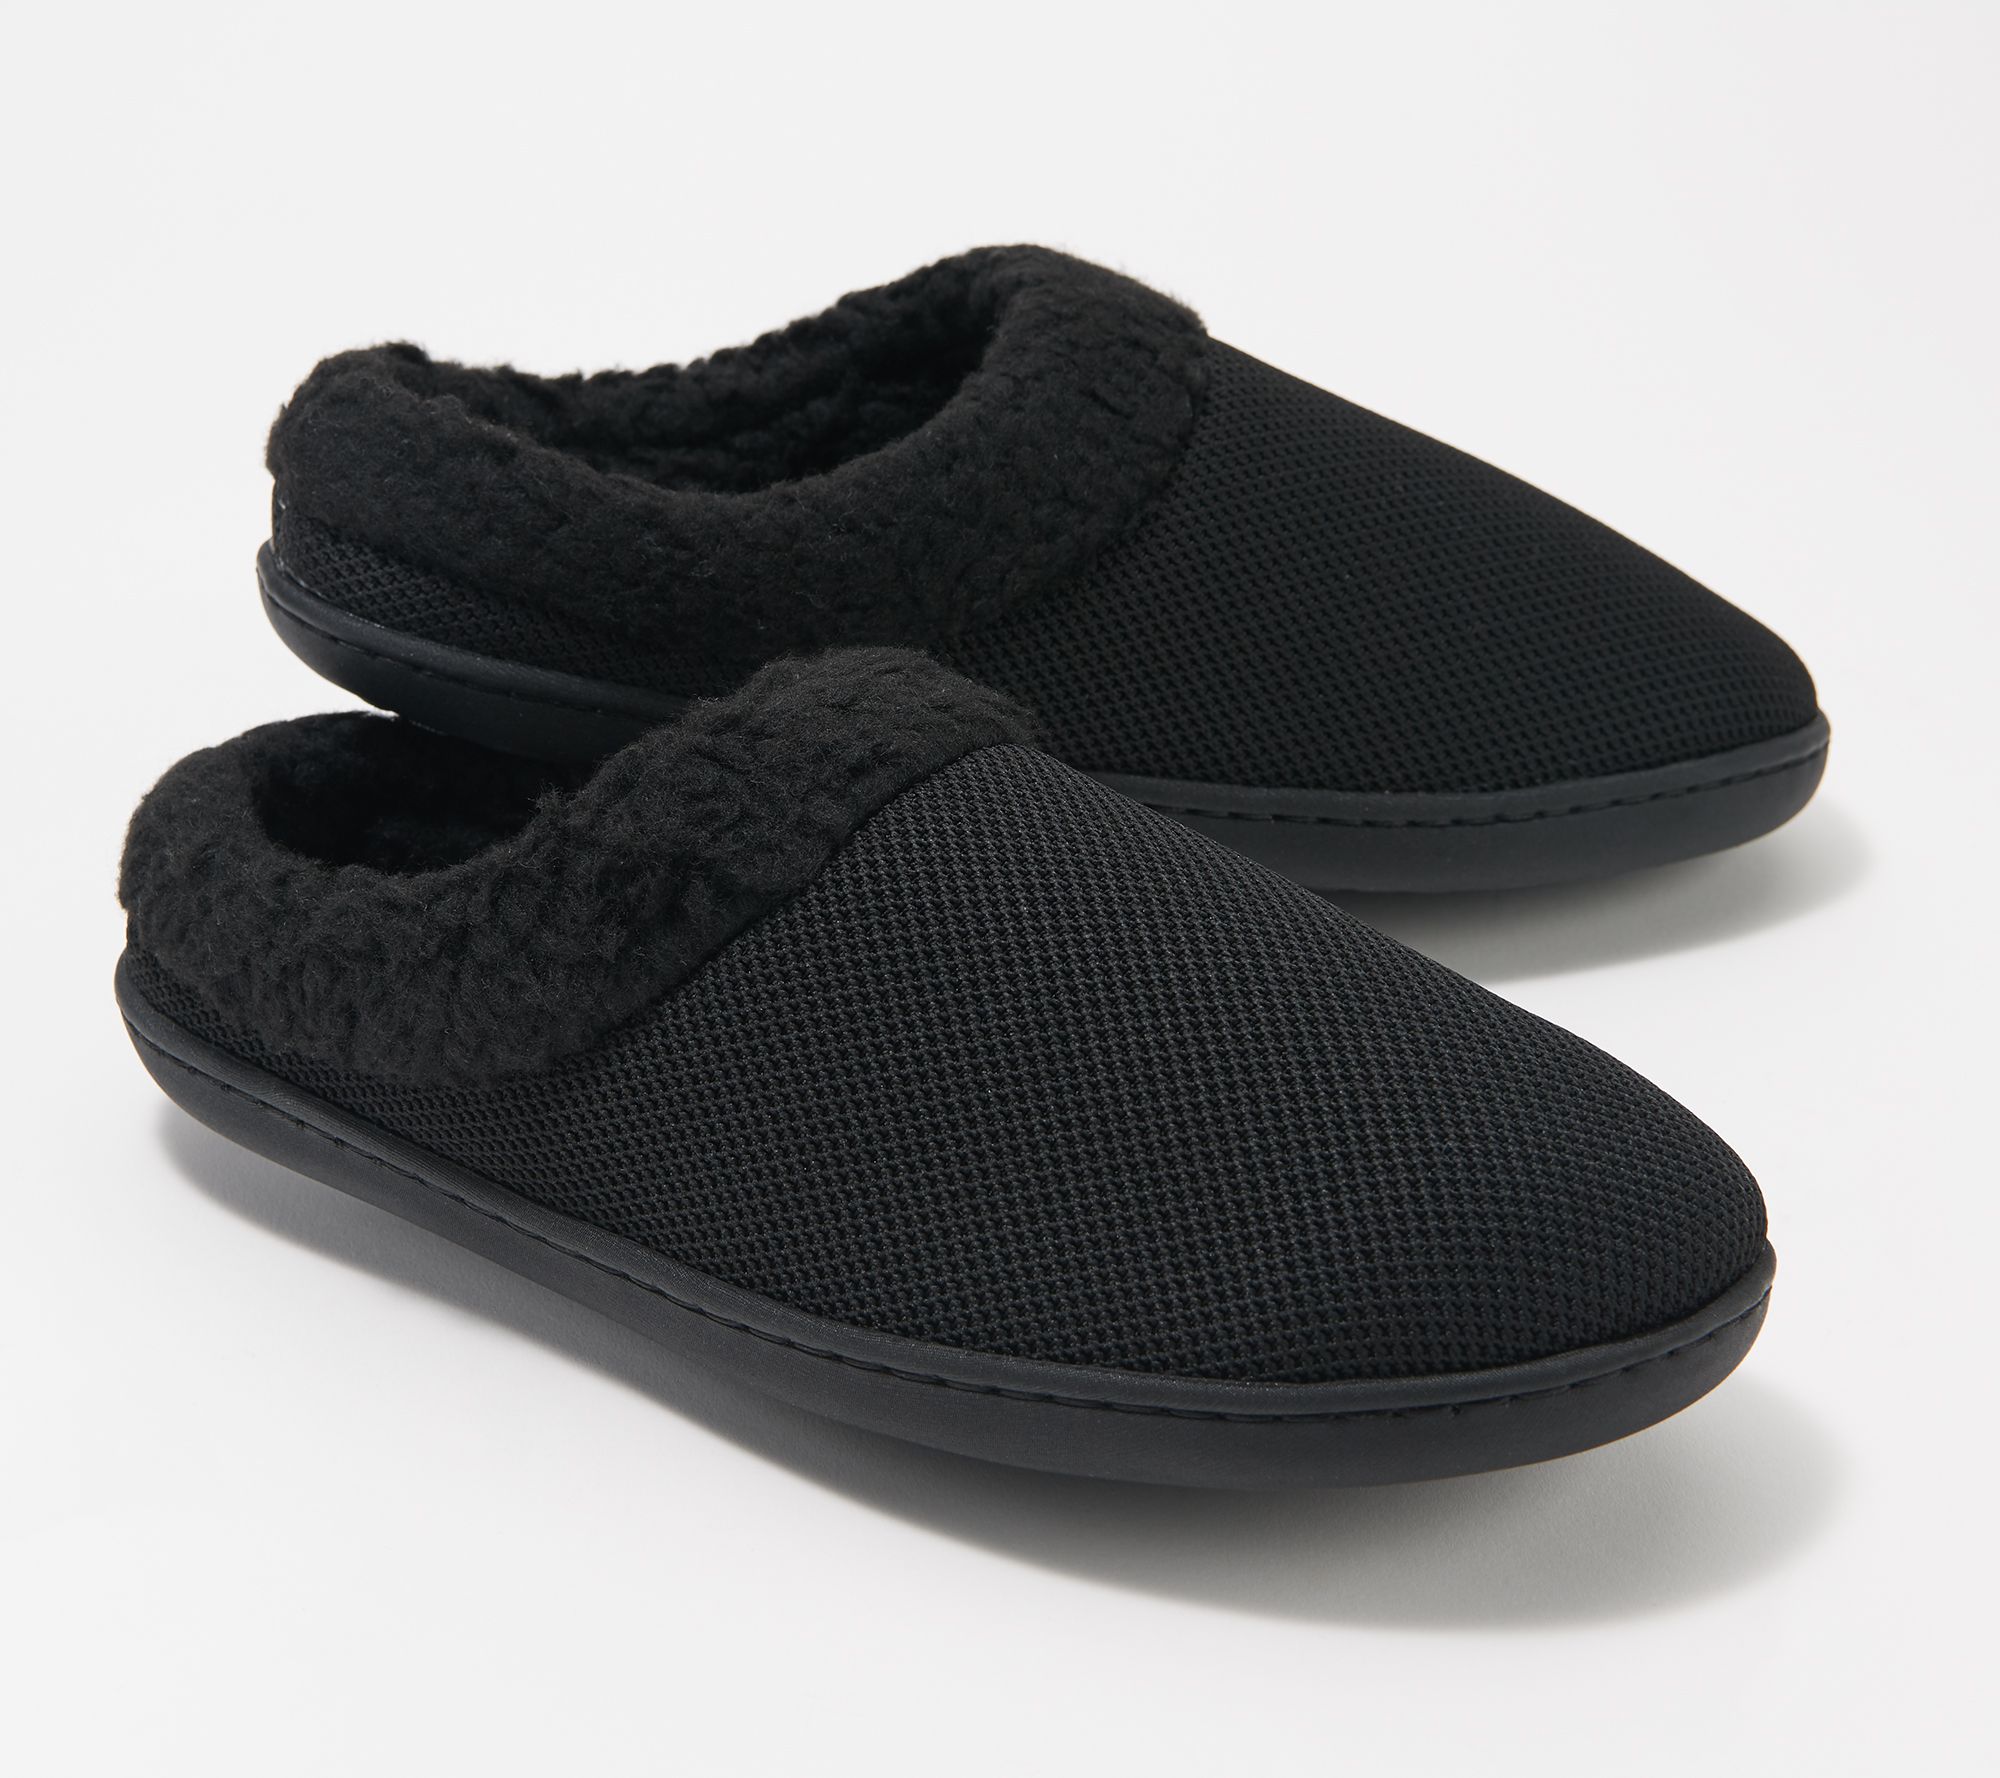 clarks men's black slippers